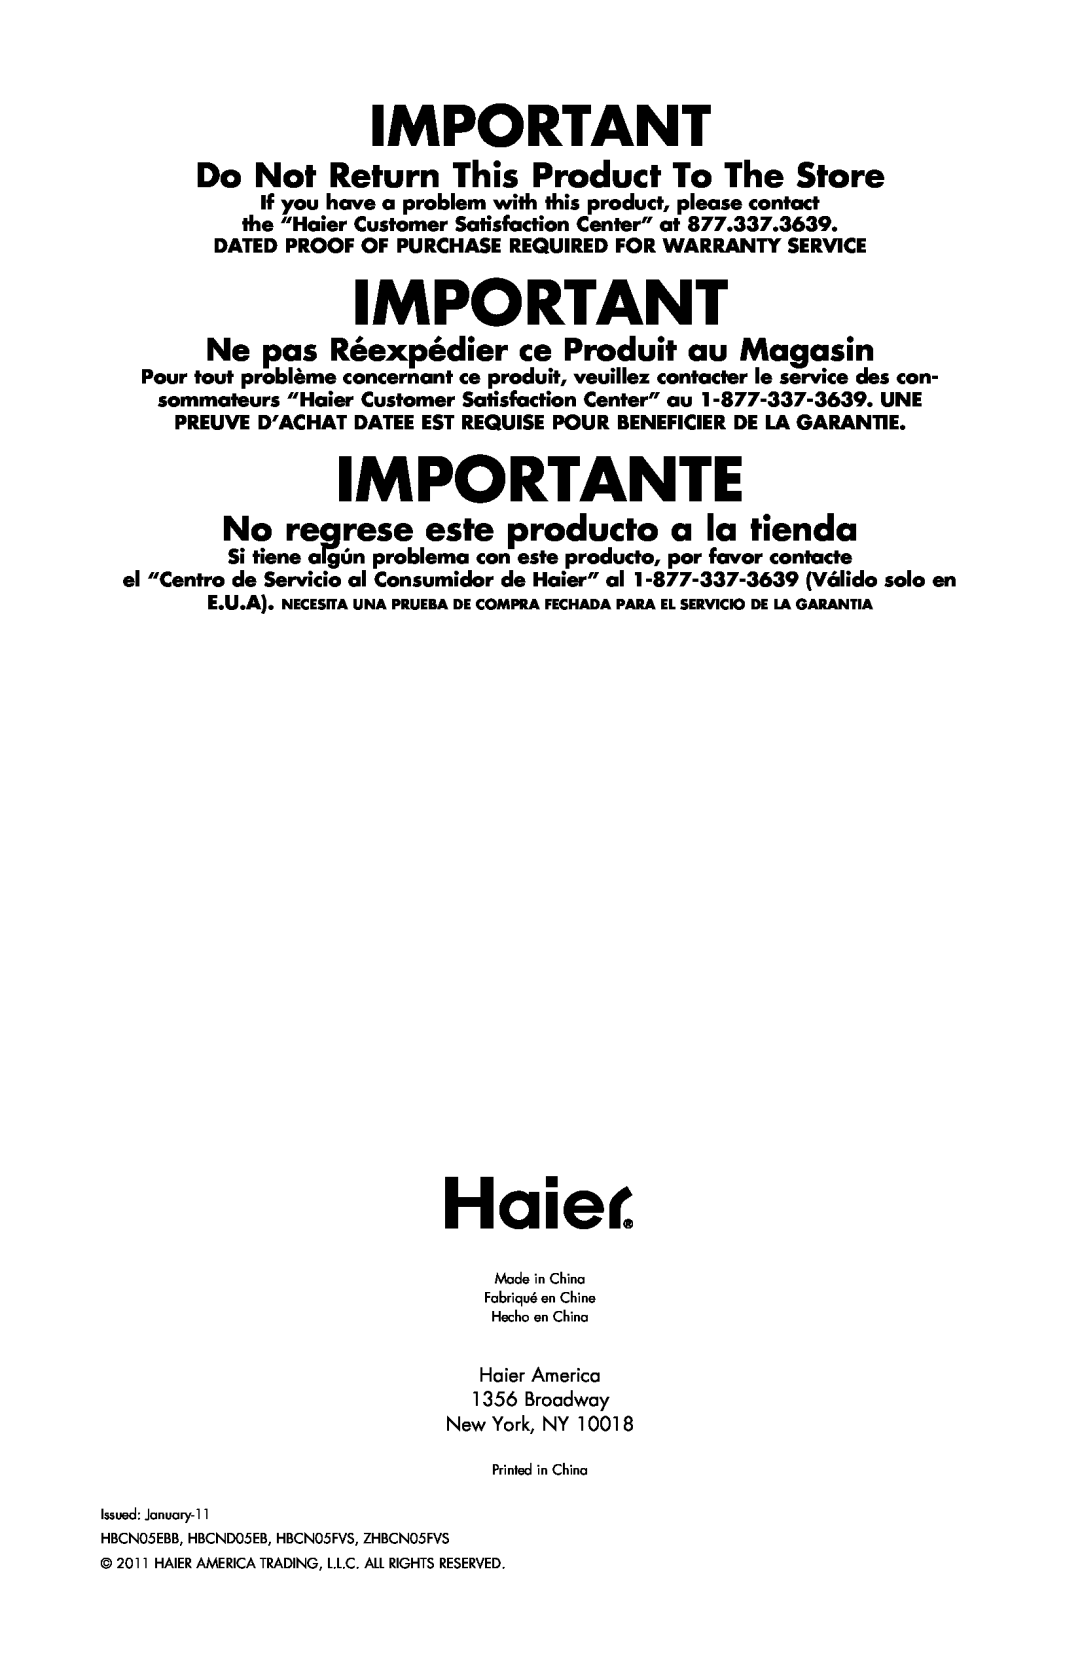 Haier user manual Issued January-11, HBCN05EBB, HBCND05EB, HBCN05FVS, ZHBCN05FVS 